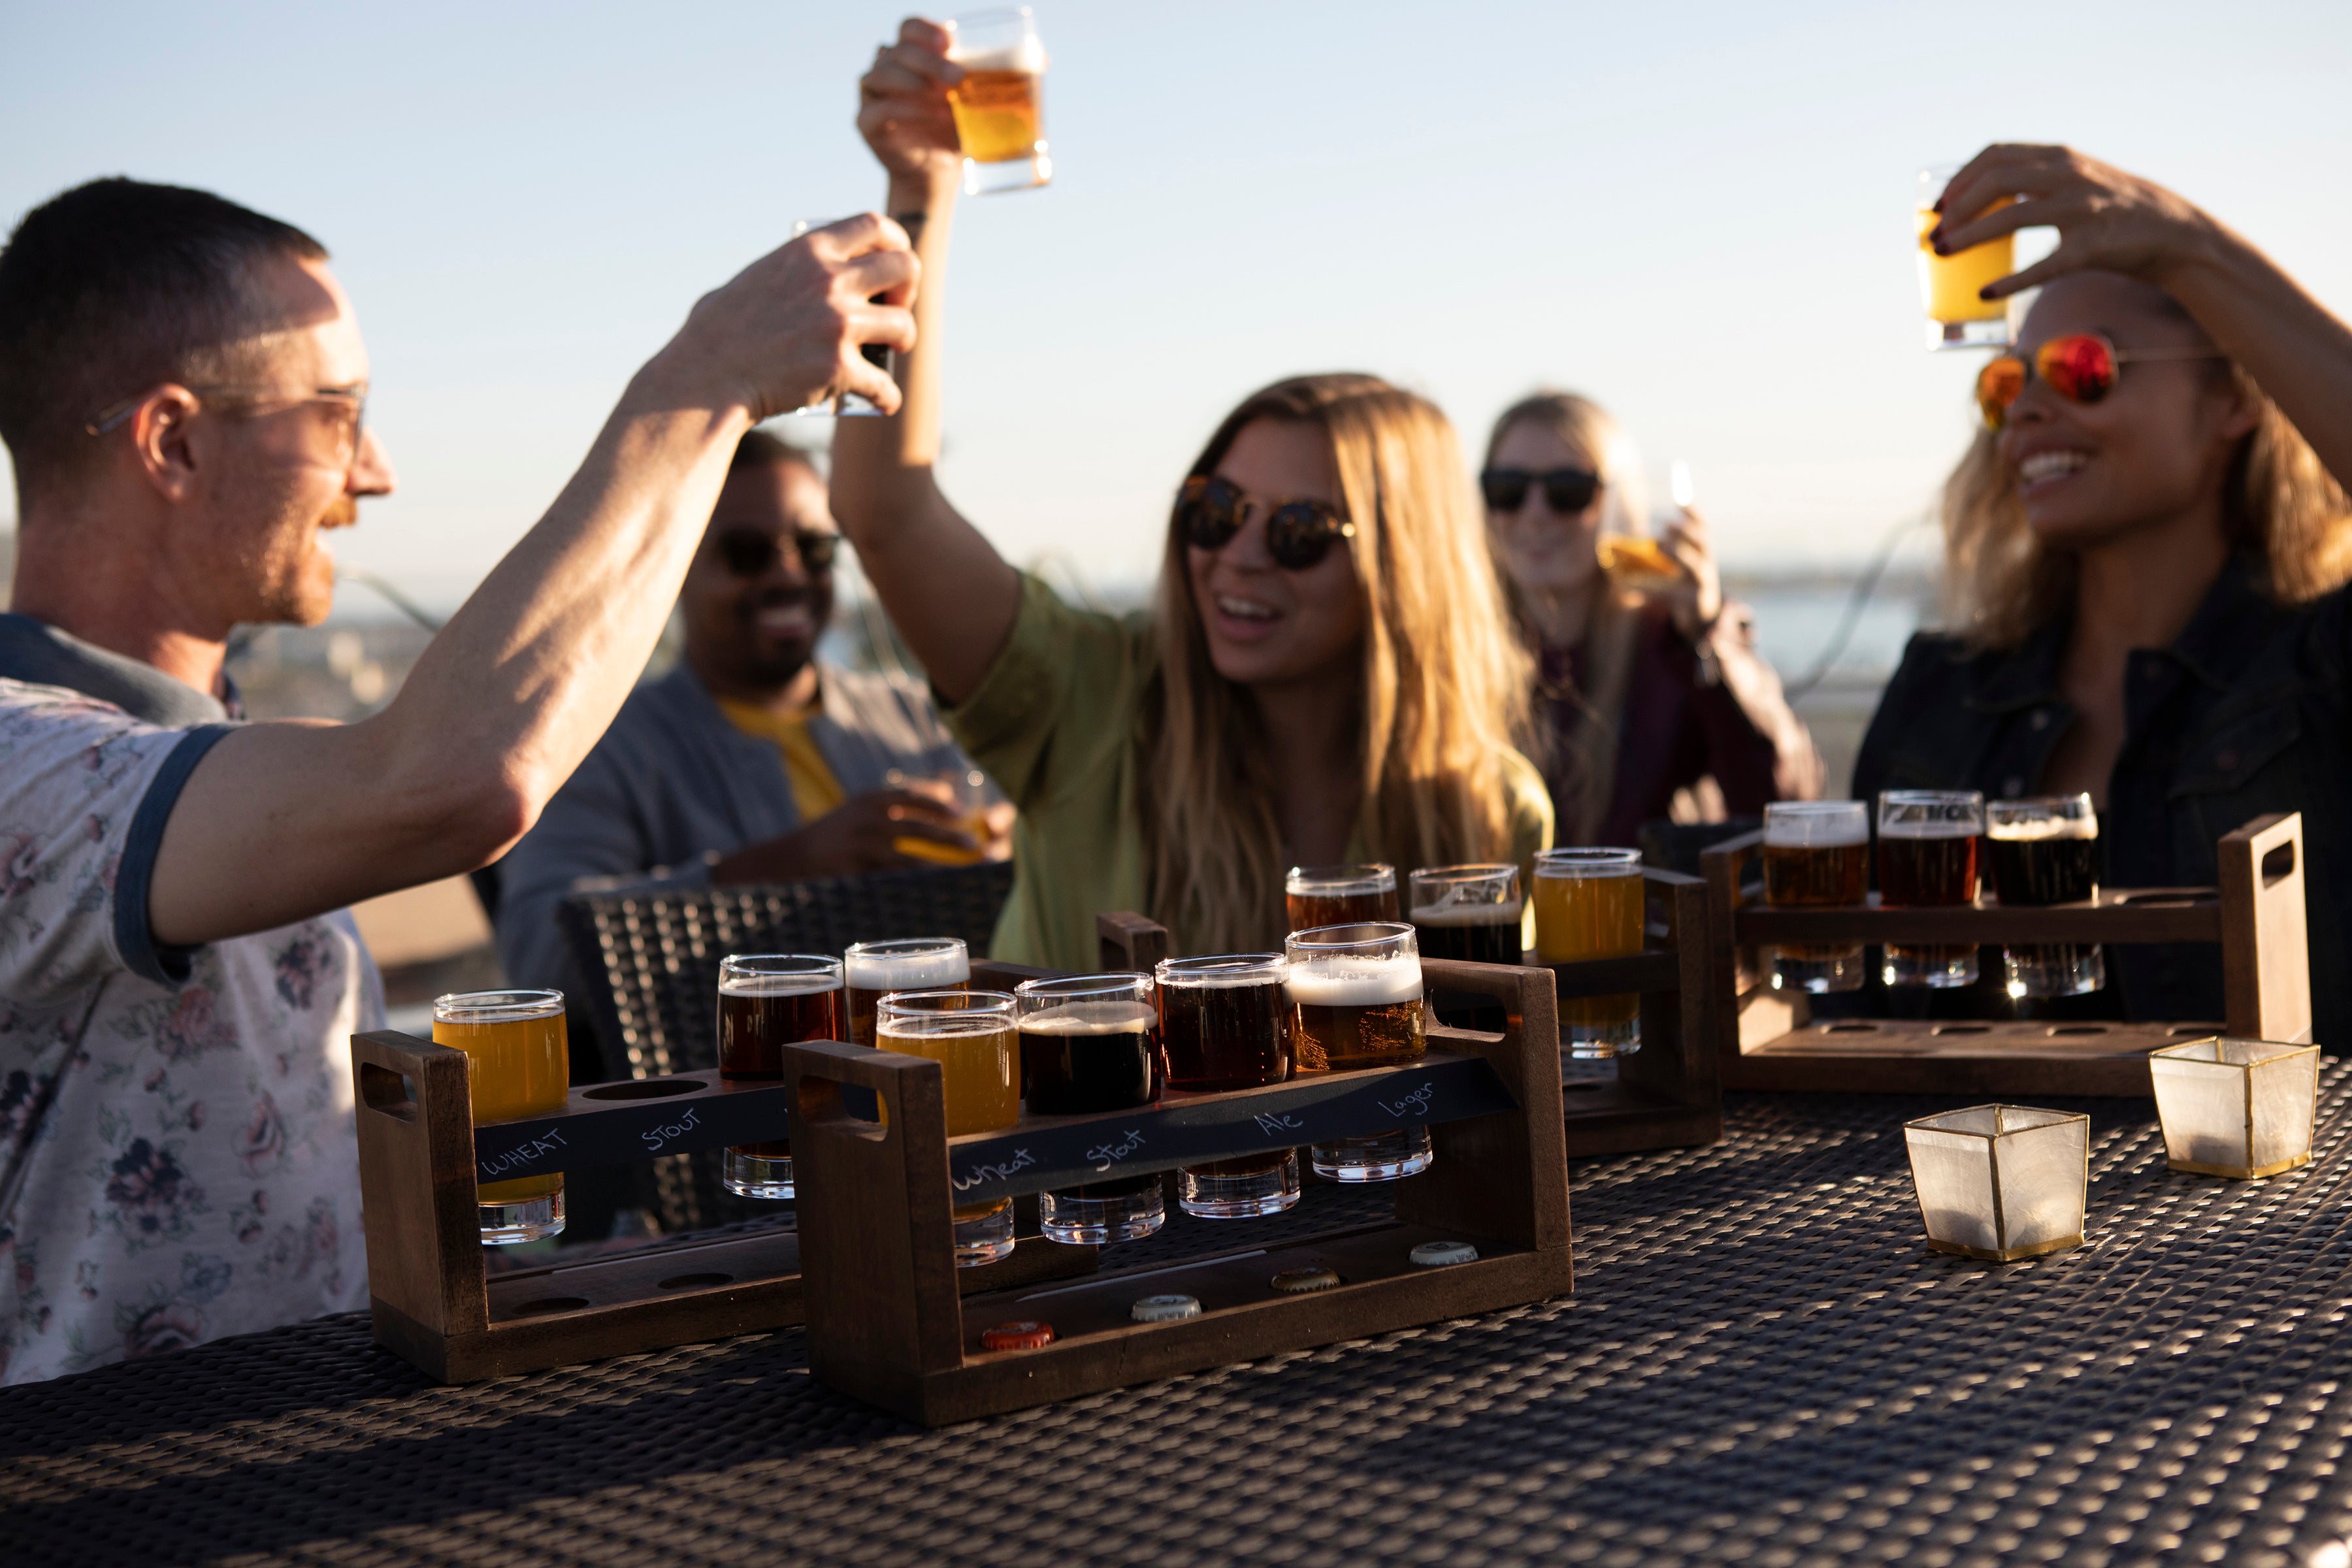 Tampa Bay Buccaneers - Craft Beer Flight Beverage Sampler